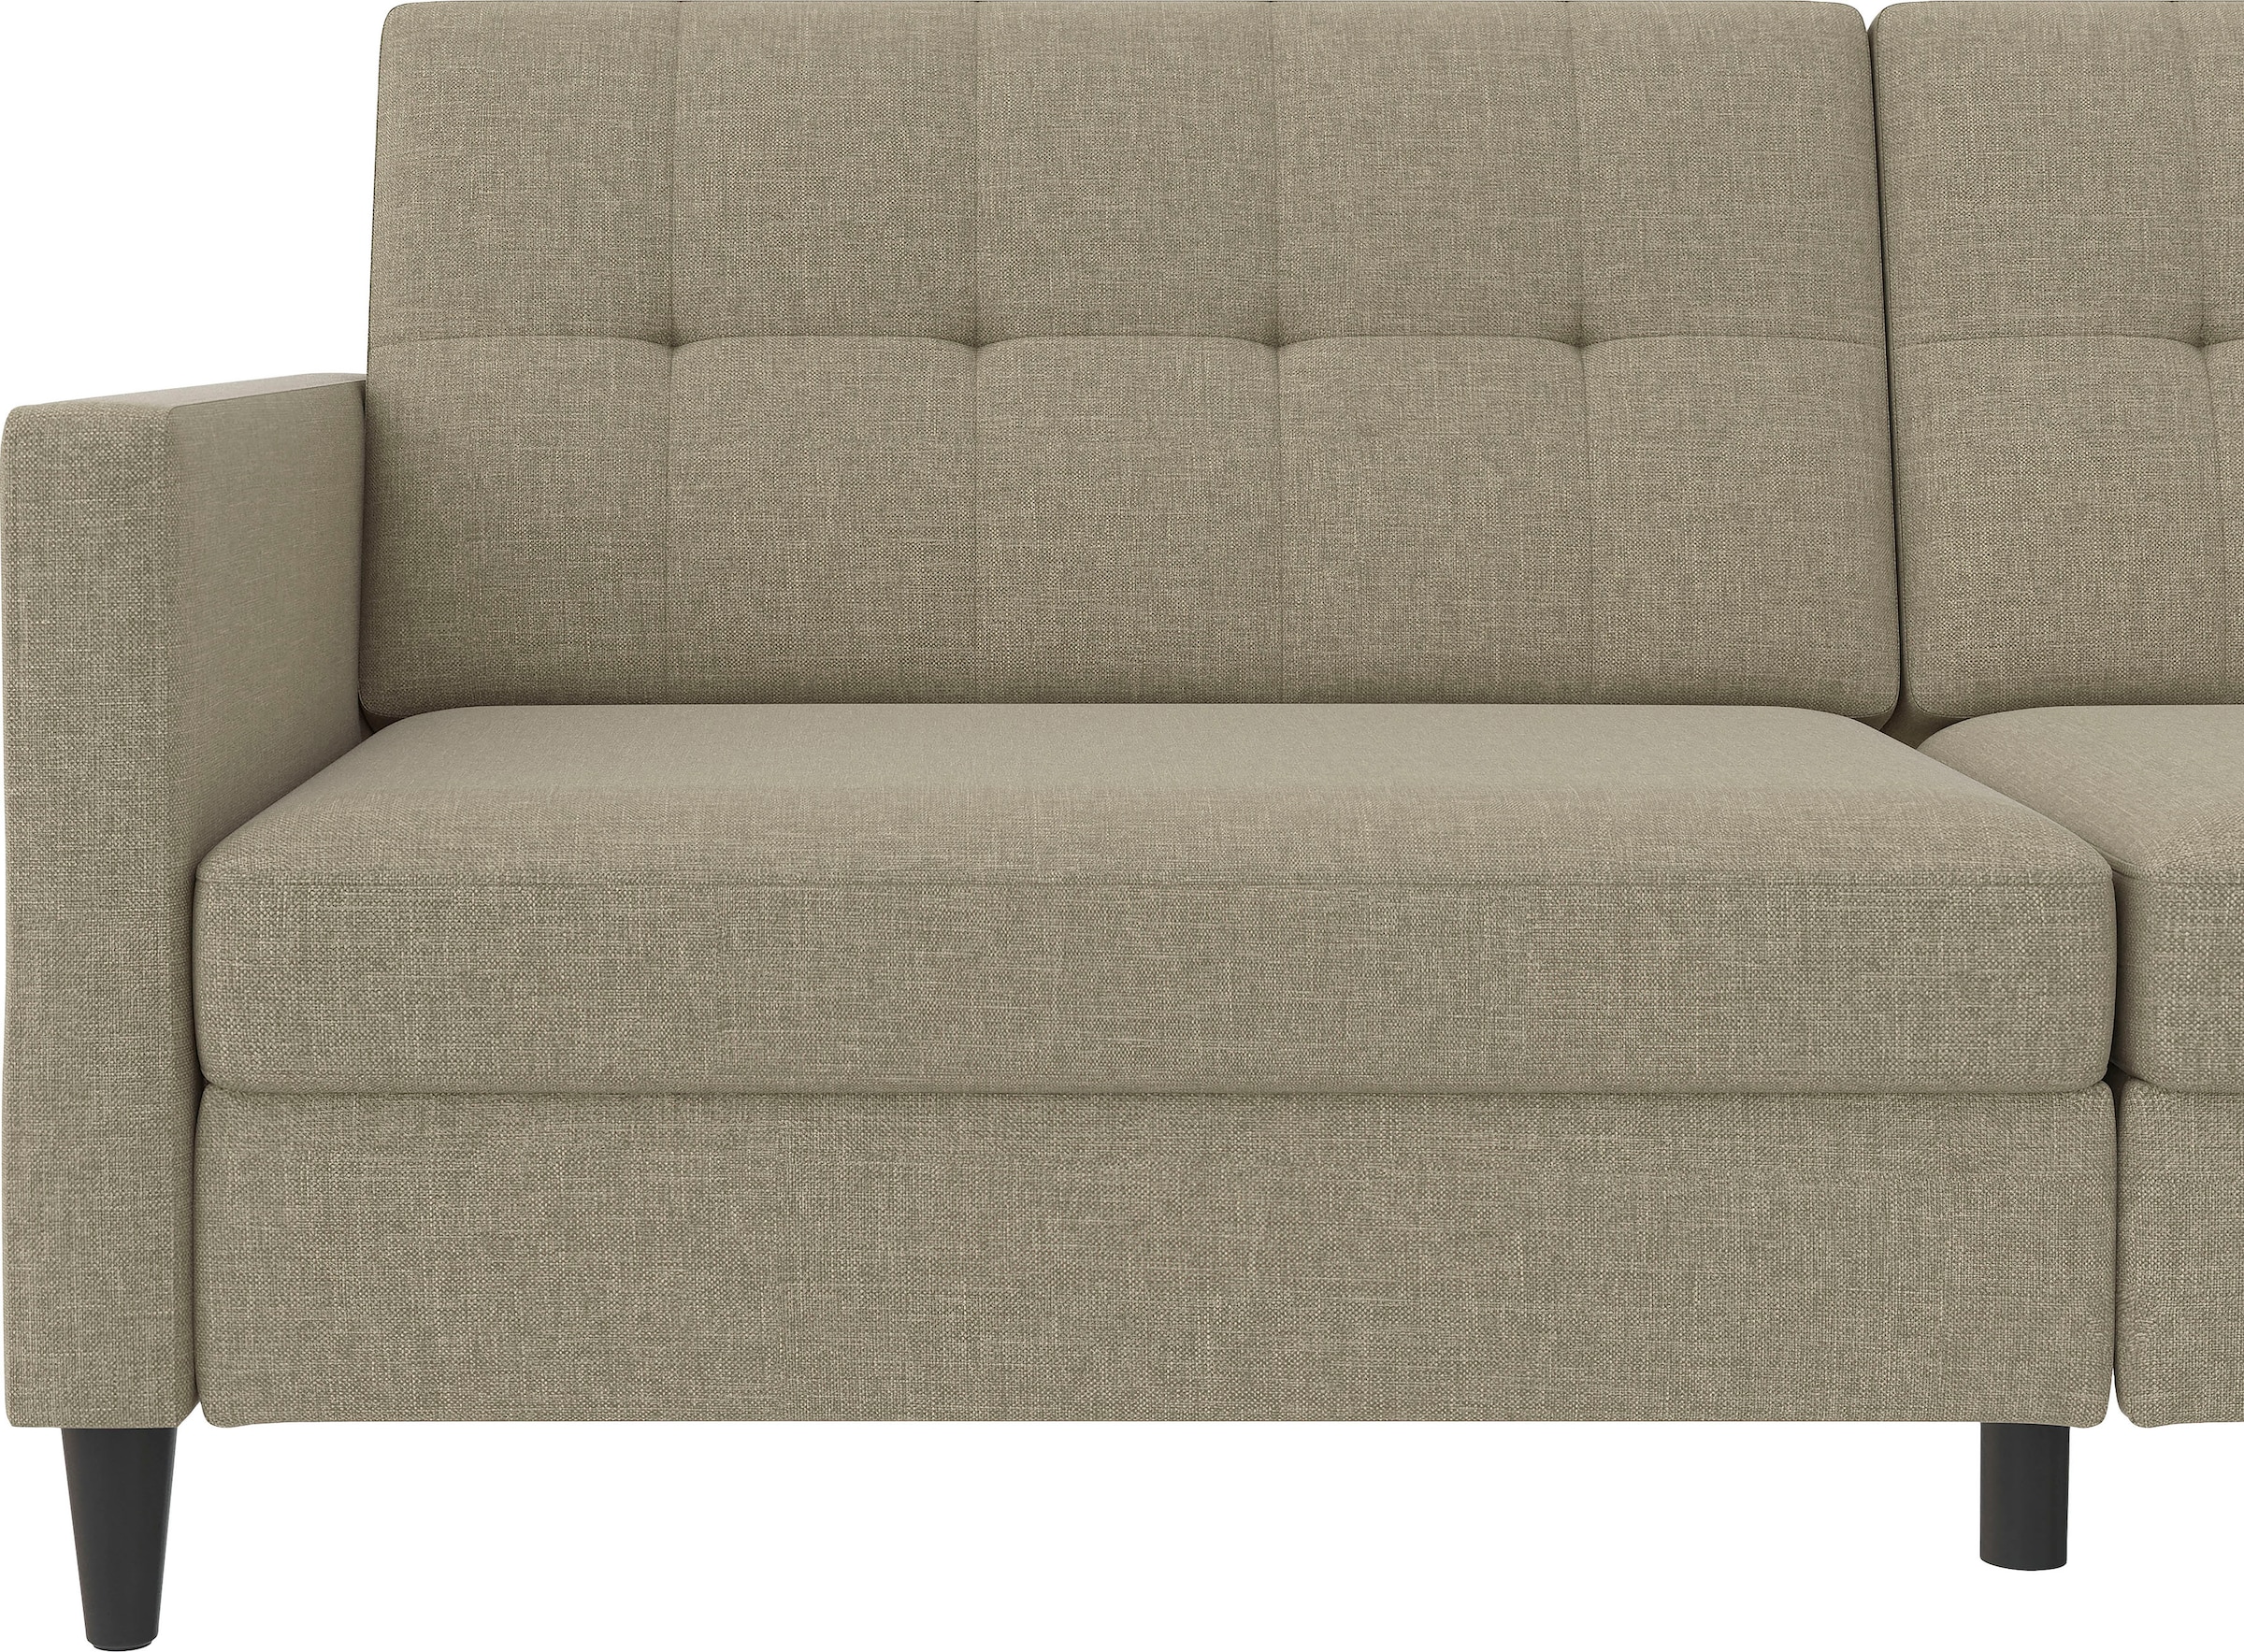 Dorel Home 3-Sitzer »Hartford II«, Bettfunktion, Rückenlehne 2-teilig, 3-fach verstellbar, Sitzhöhe 43 cm